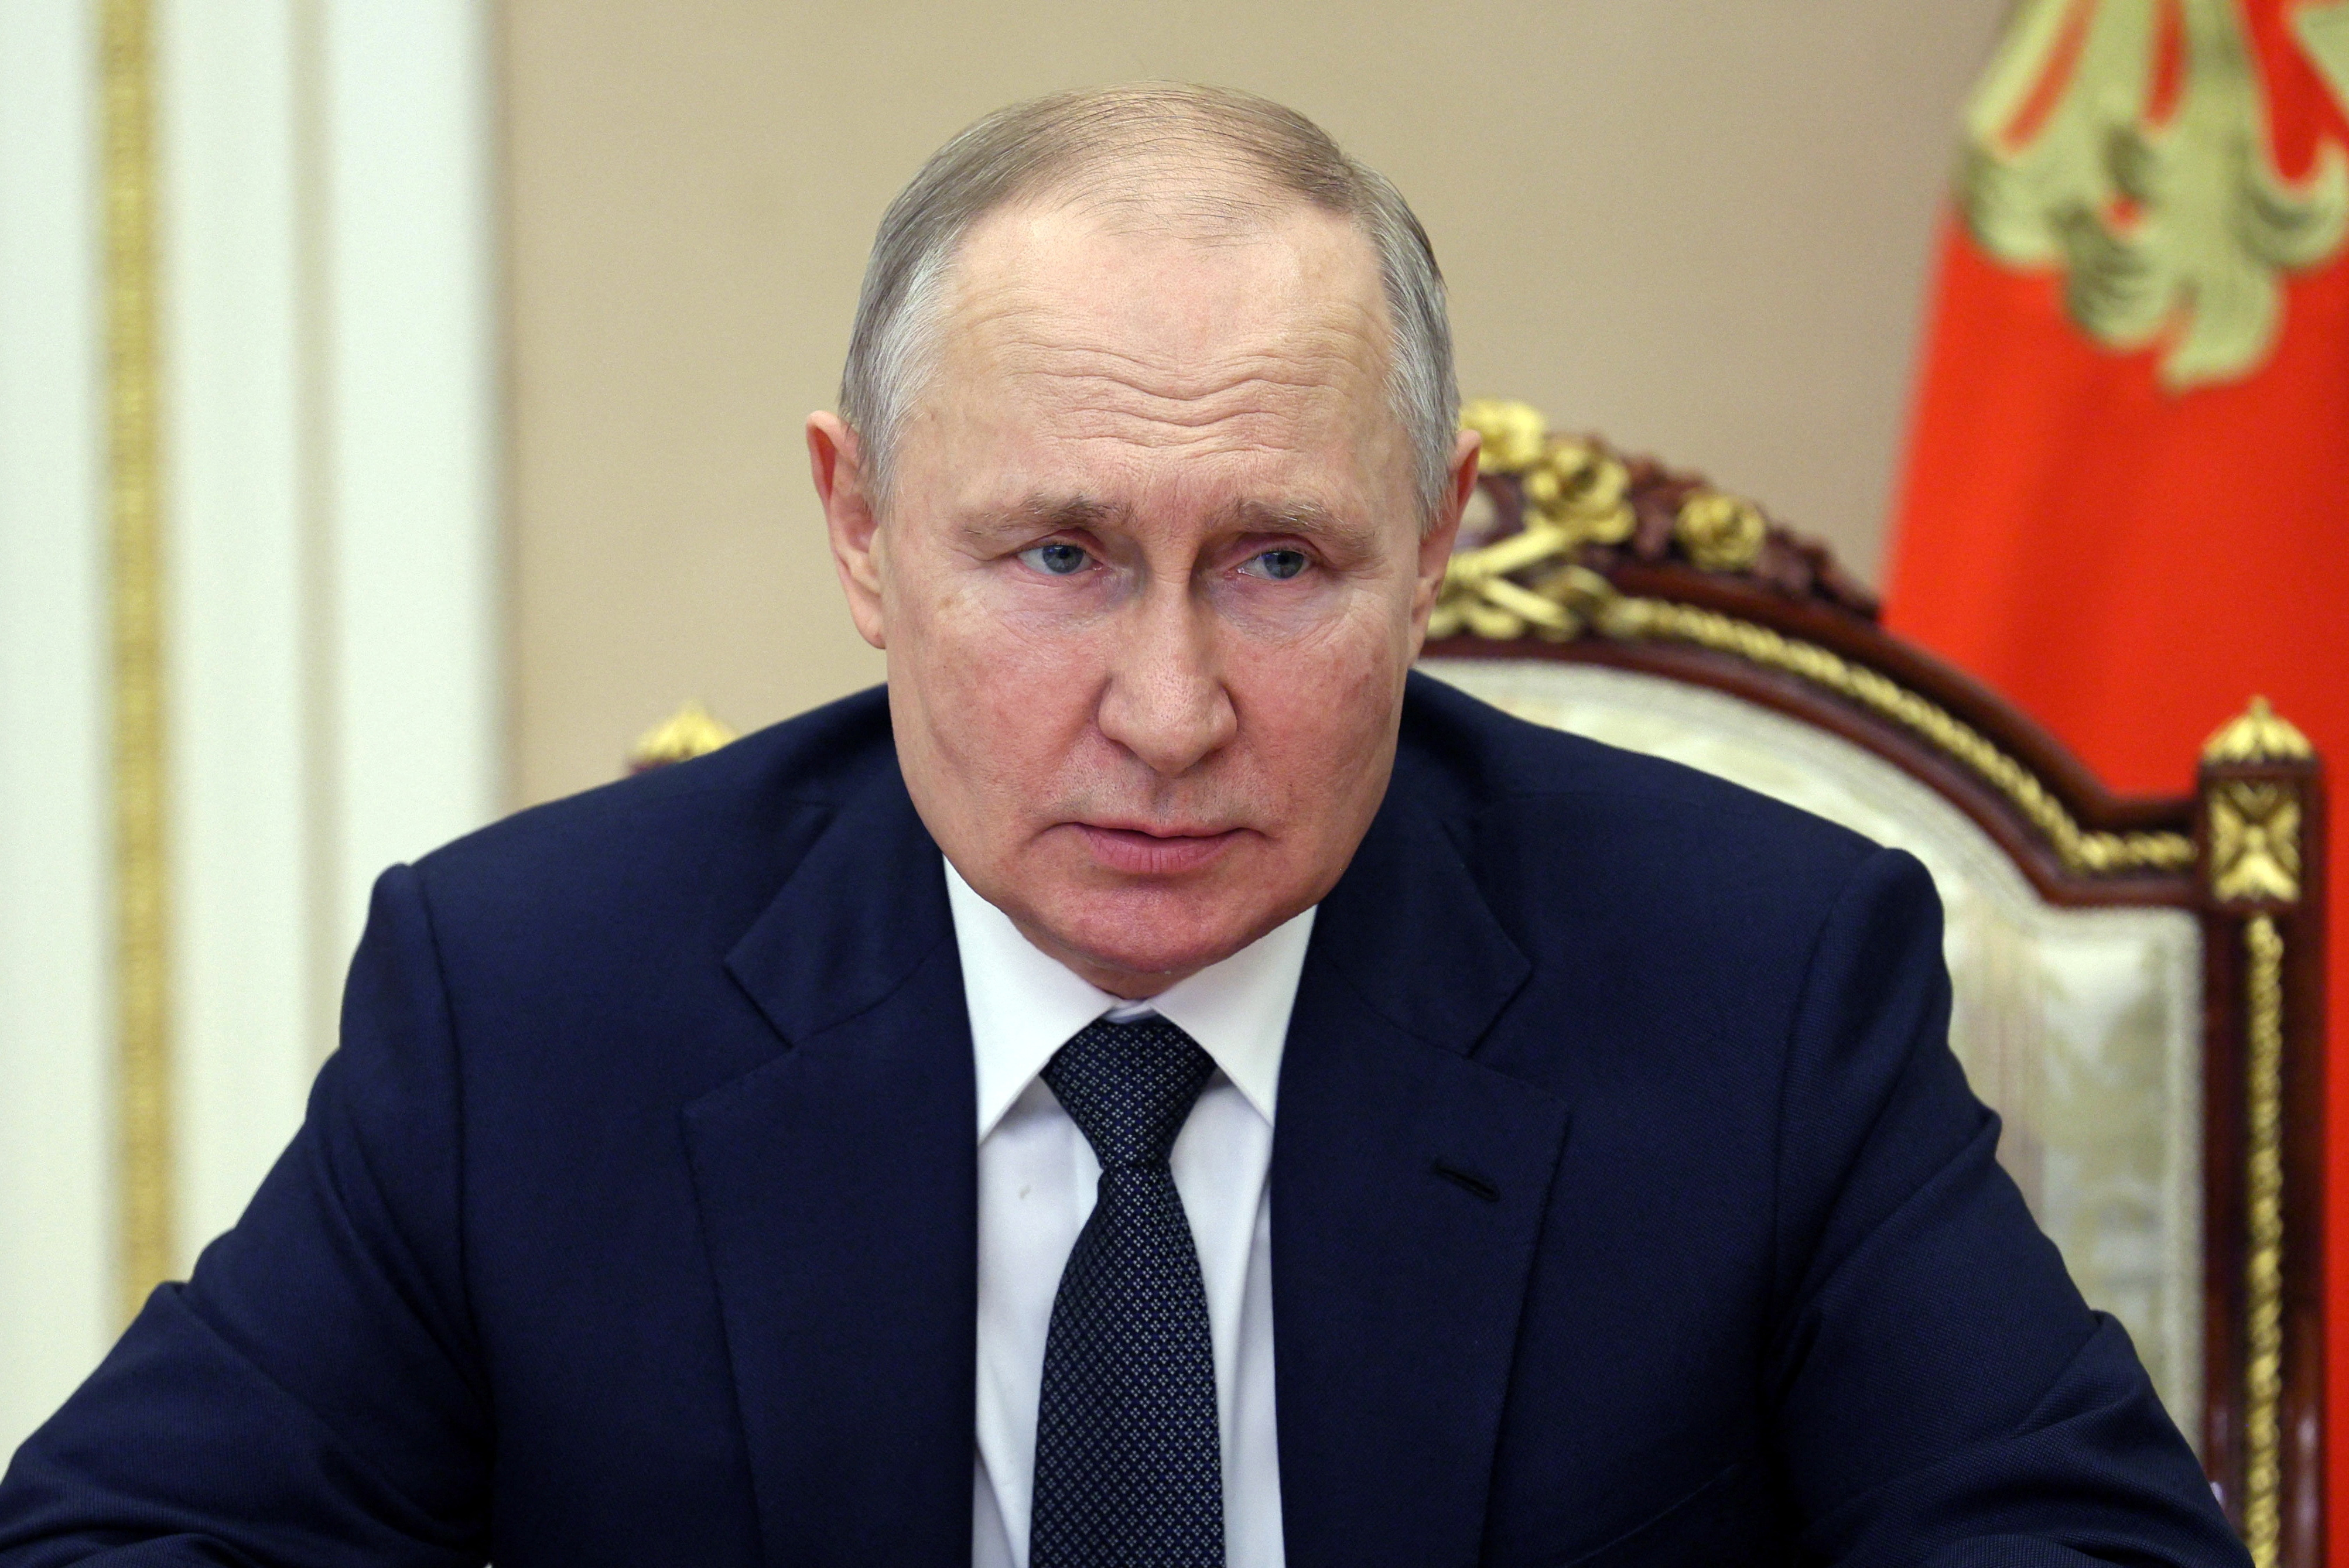 El presidente ruso Vladimir Putin preside una reunión con miembros del Consejo de Seguridad a través de un enlace de video en Moscú, Rusia, el 24 de marzo de 2023. Sputnik/Alexei Babushkin/Kremlin vía REUTERS